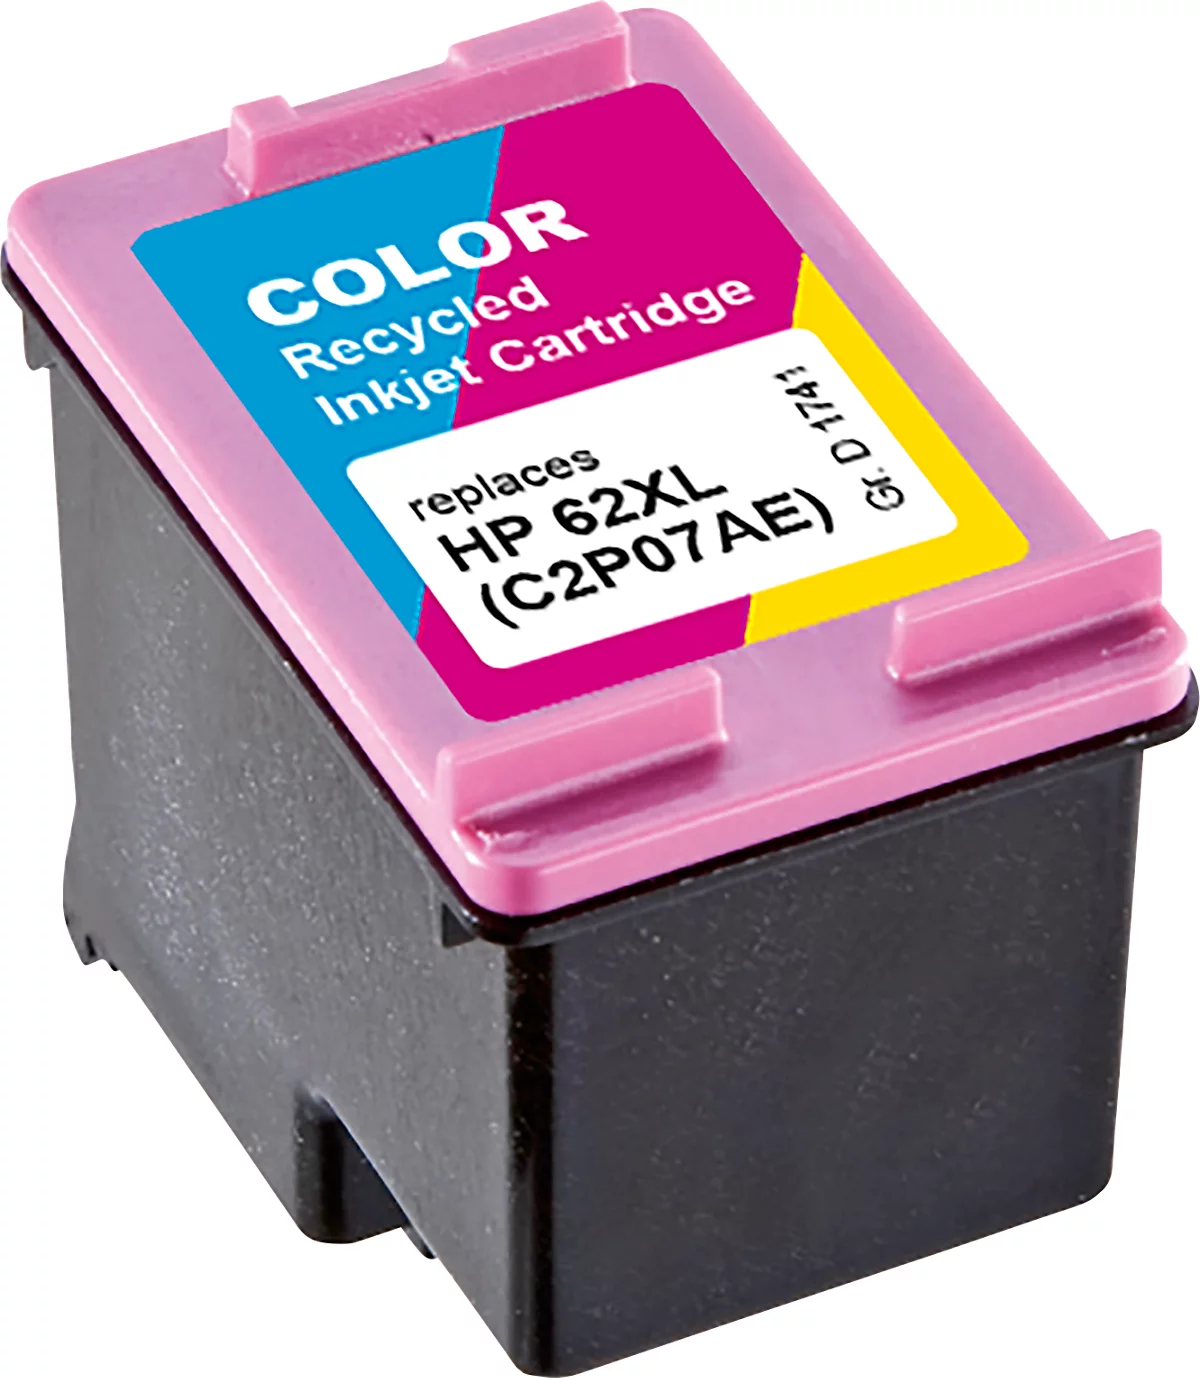 Schäfer Shop Select Cartouches d'encre Multipack compatibles HP 963XL,  noir/cyan/magenta/jaune à prix avantageux